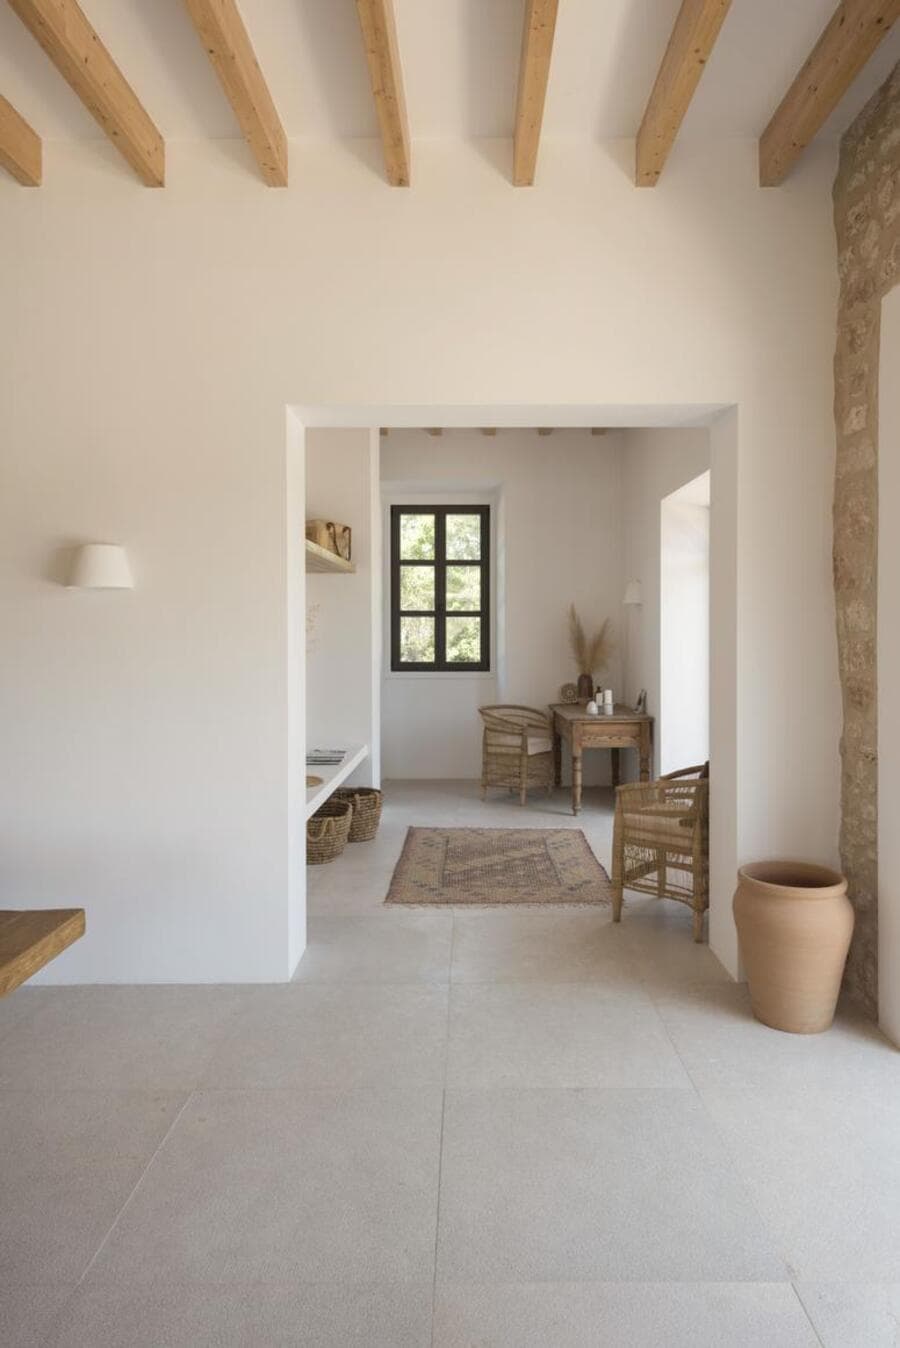 Casa estilo mediterráneo, minimalista. Muros blancos con piso de cerámica beige. Dos sillas de mimbre, una mesa cuadrada de madera en un rincón. Al centro hay una alfombra estilo oriental en tonos tierra. En la esquina un gran jarrón de cerámica color café